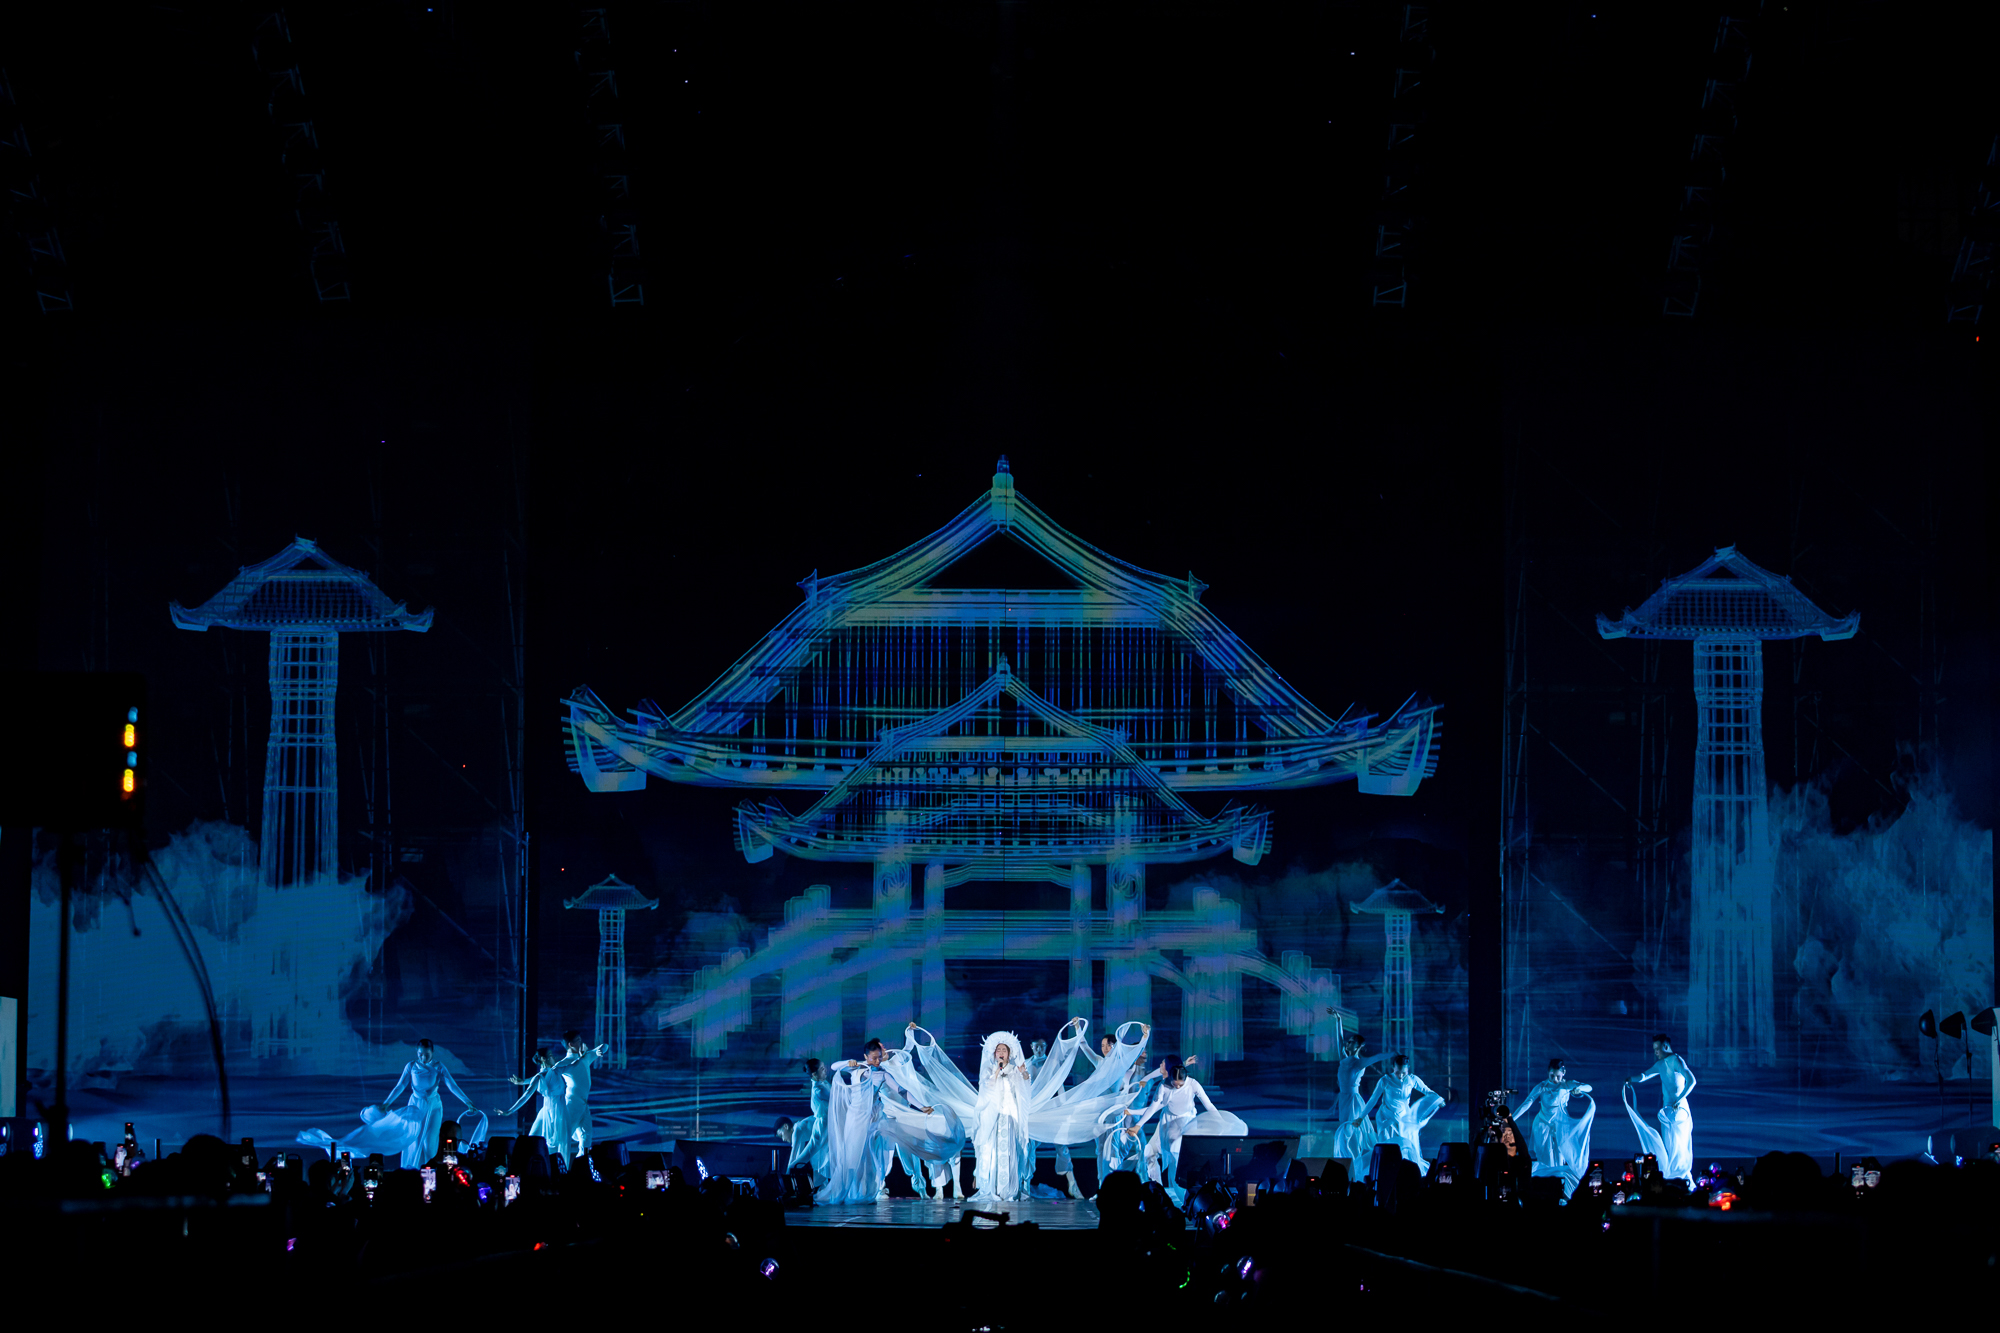 Đen Vâu xuất hiện trong concert của Hoàng Thùy Linh sau tin đồn bí mật đám hỏi - Ảnh 6.